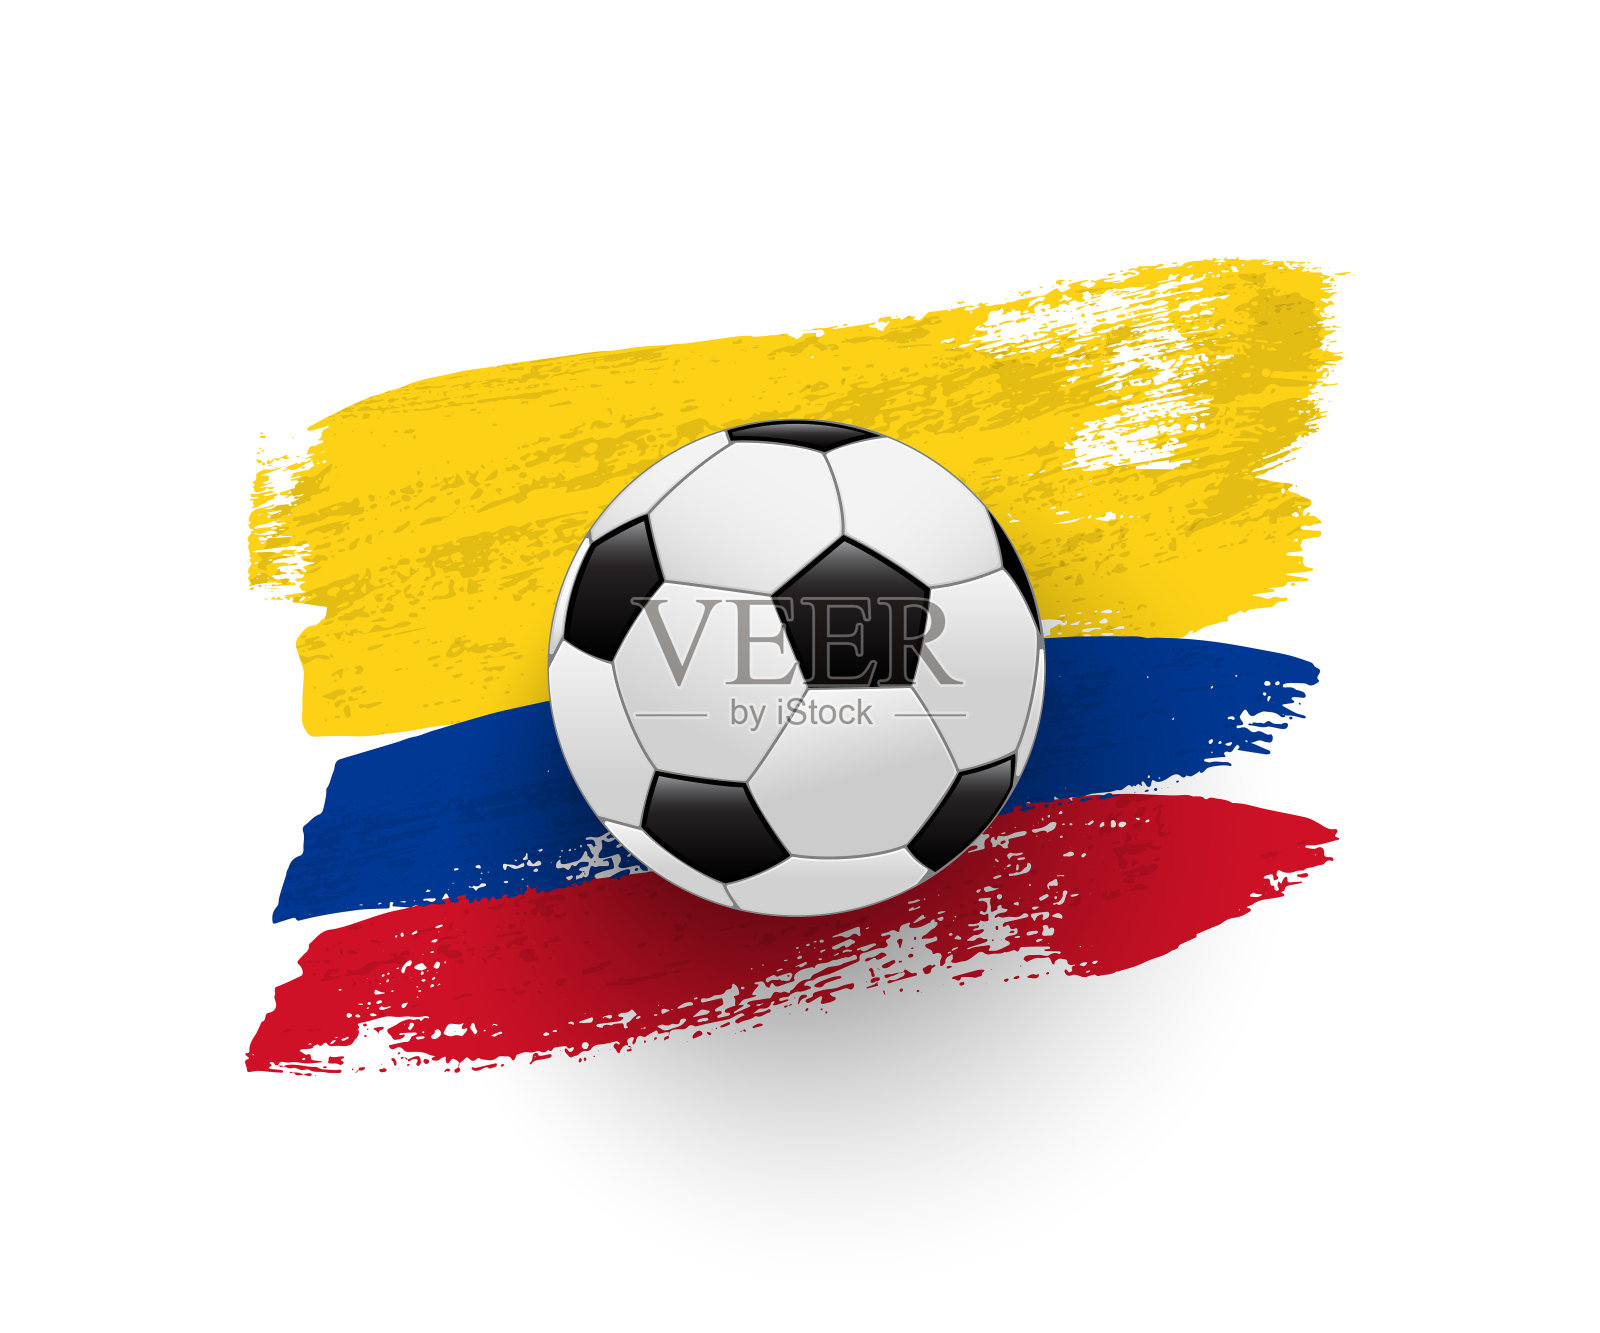 哥伦比亚国旗 库存图片. 图片 包括有 艺术, 标志, 格朗基, 纹理, 绘画, 钞票, 油漆, 画布 - 237384111